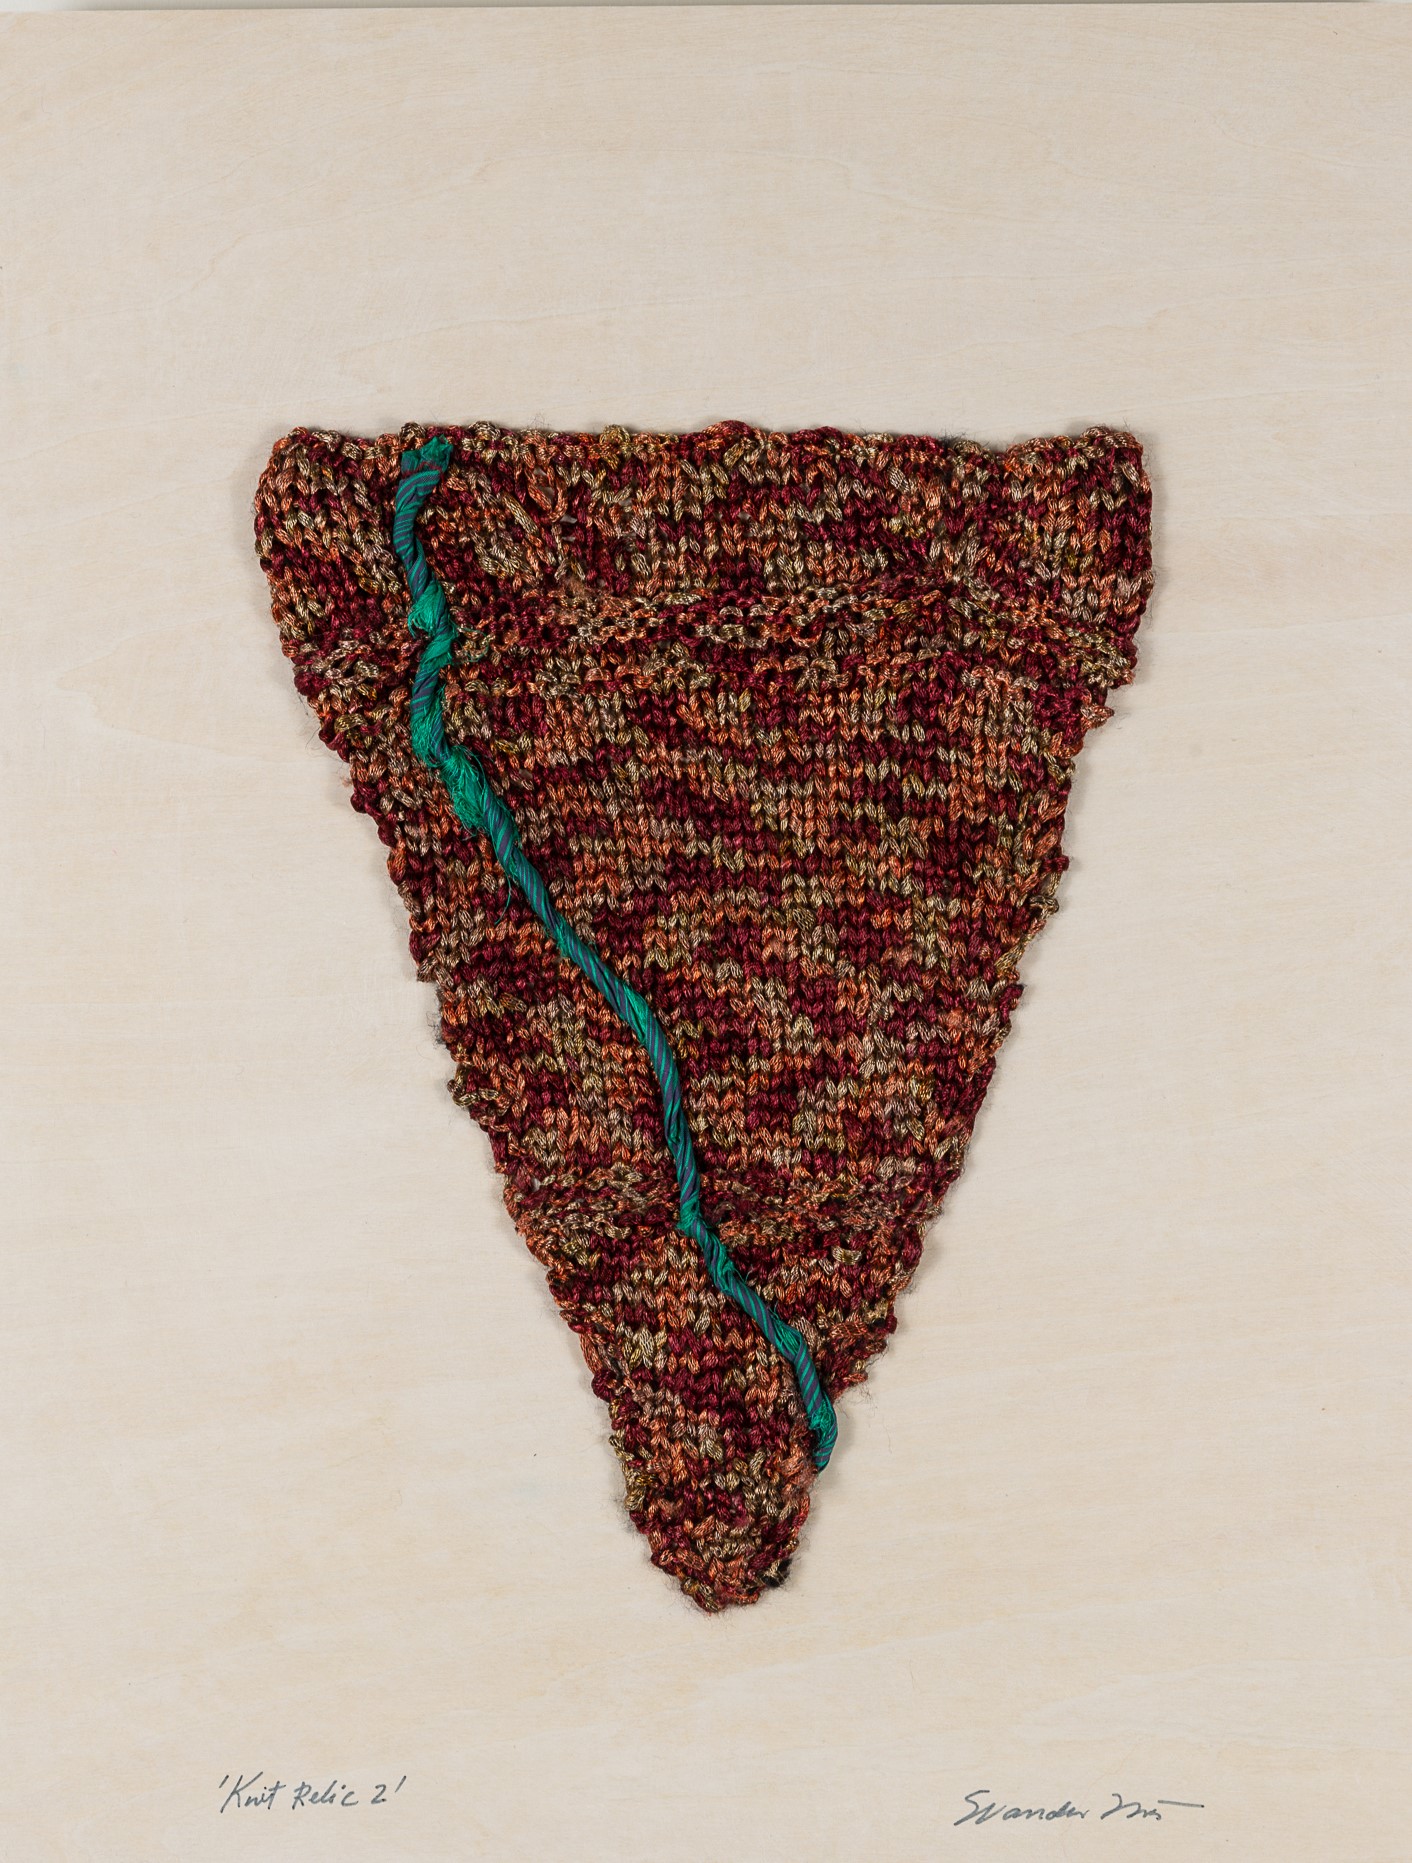  Sylvia Vander Sluis,  Knit Relic 2 (Burgundy/Turquoise) , Handknit yarn, sari ribbon, 18x14x1.5 